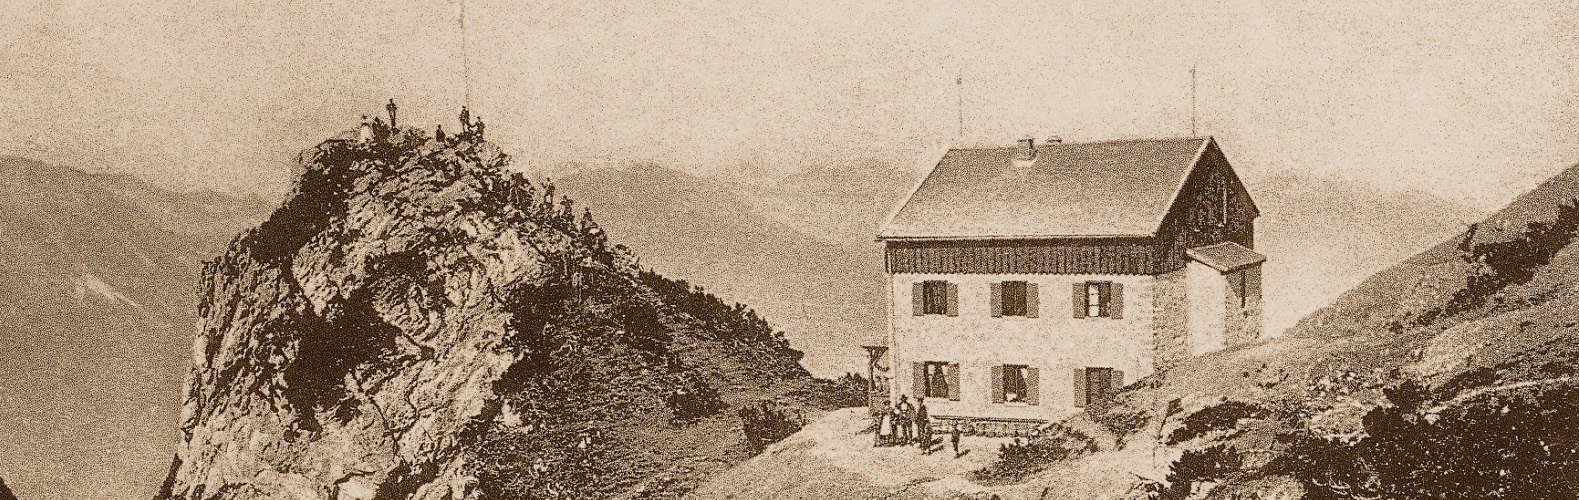 Das Wendelsteinhaus im Jahr 1883, © Archiv der Wendelsteinbahn GmbH